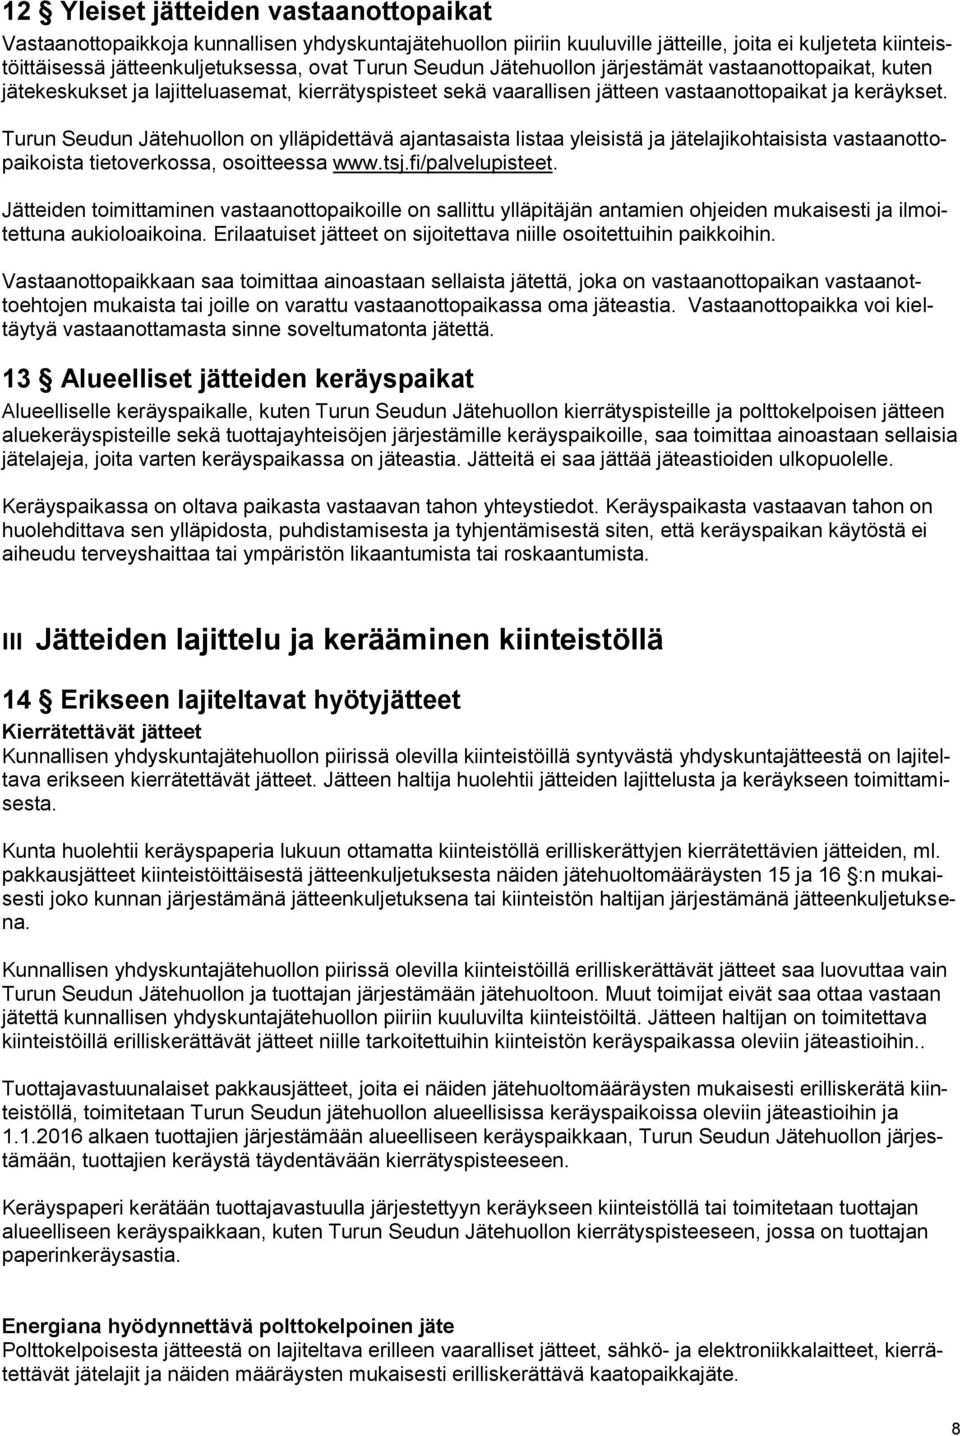 Turun Seudun Jätehuollon on ylläpidettävä ajantasaista listaa yleisistä ja jätelajikohtaisista vastaanottopaikoista tietoverkossa, osoitteessa www.tsj.fi/palvelupisteet.